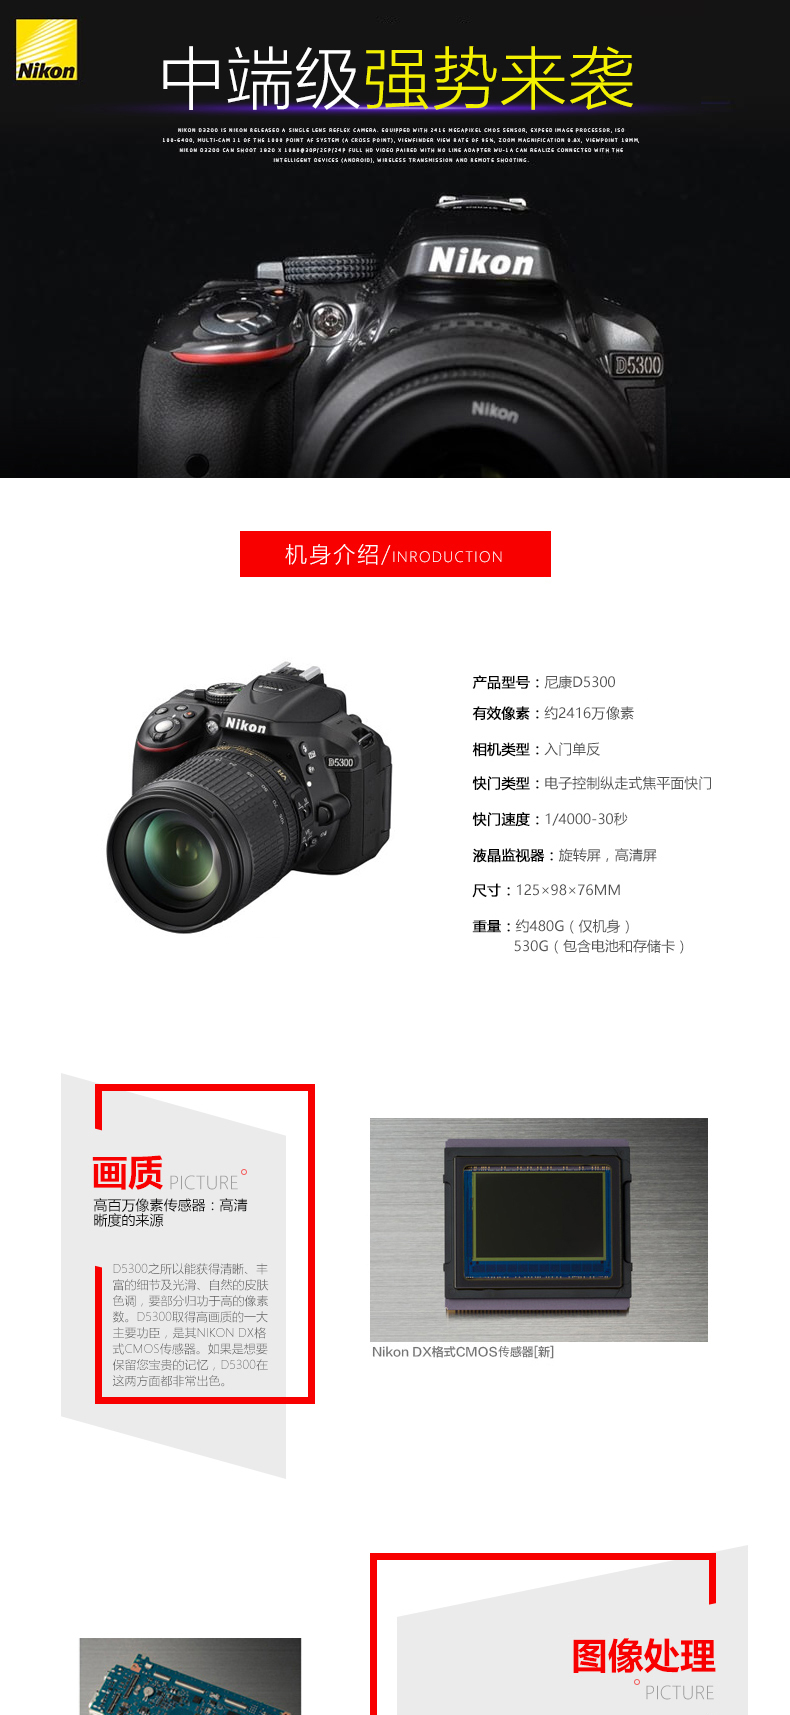 尼康(Nikon) D5300（腾龙18-270mm）镜头套装 广角防抖 2416万像素 翻转屏 WIFI功能